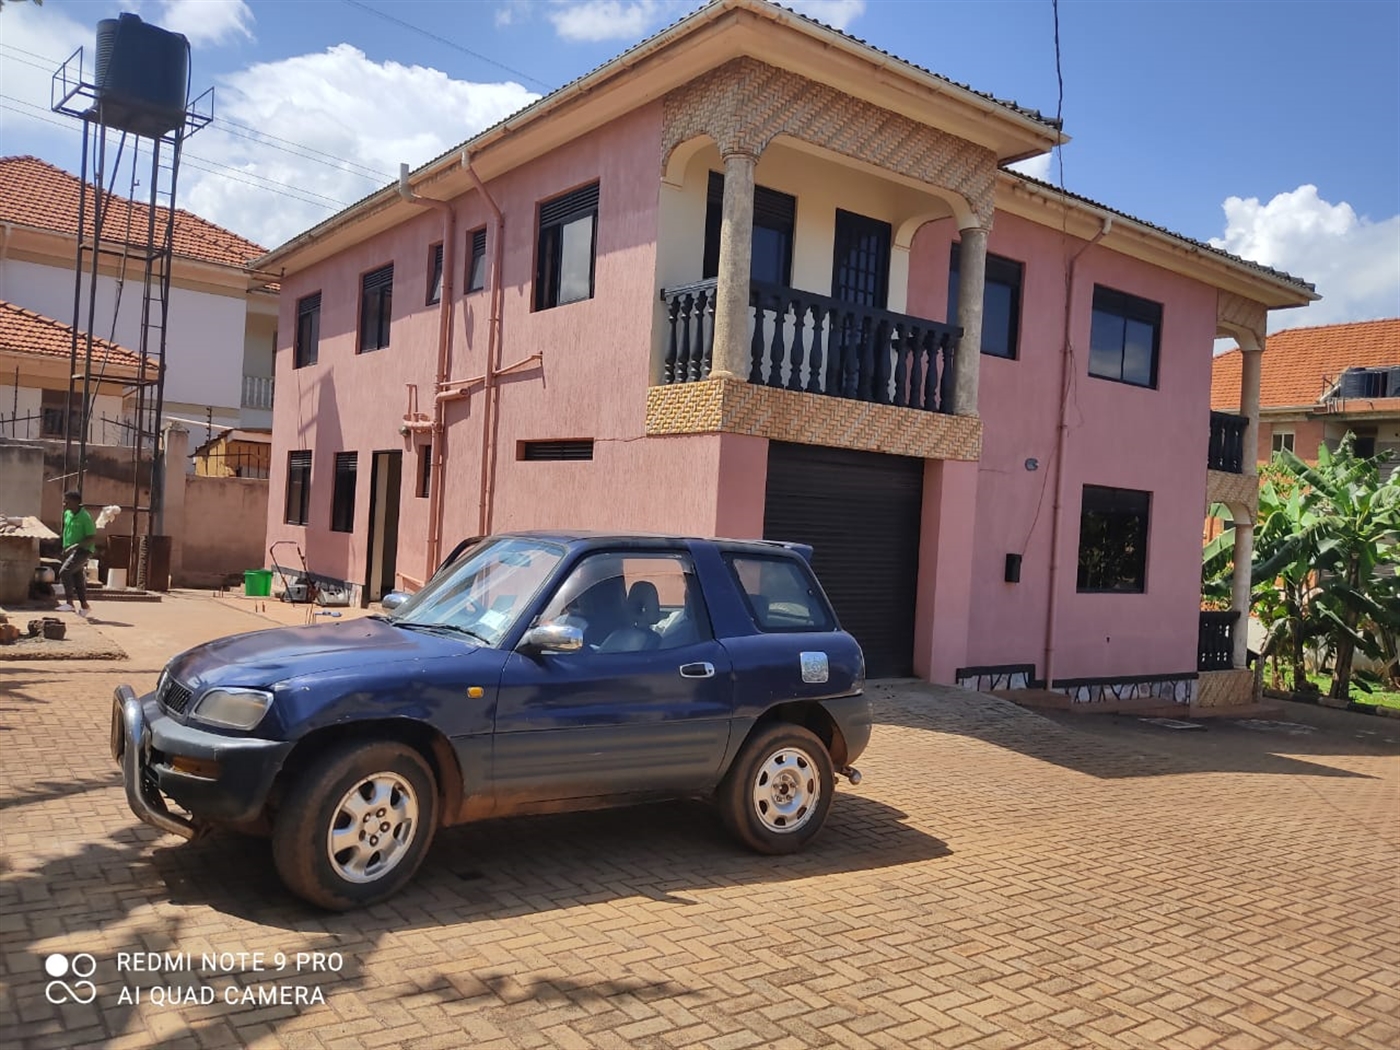 Duplex for sale in Kyambogo Kampala